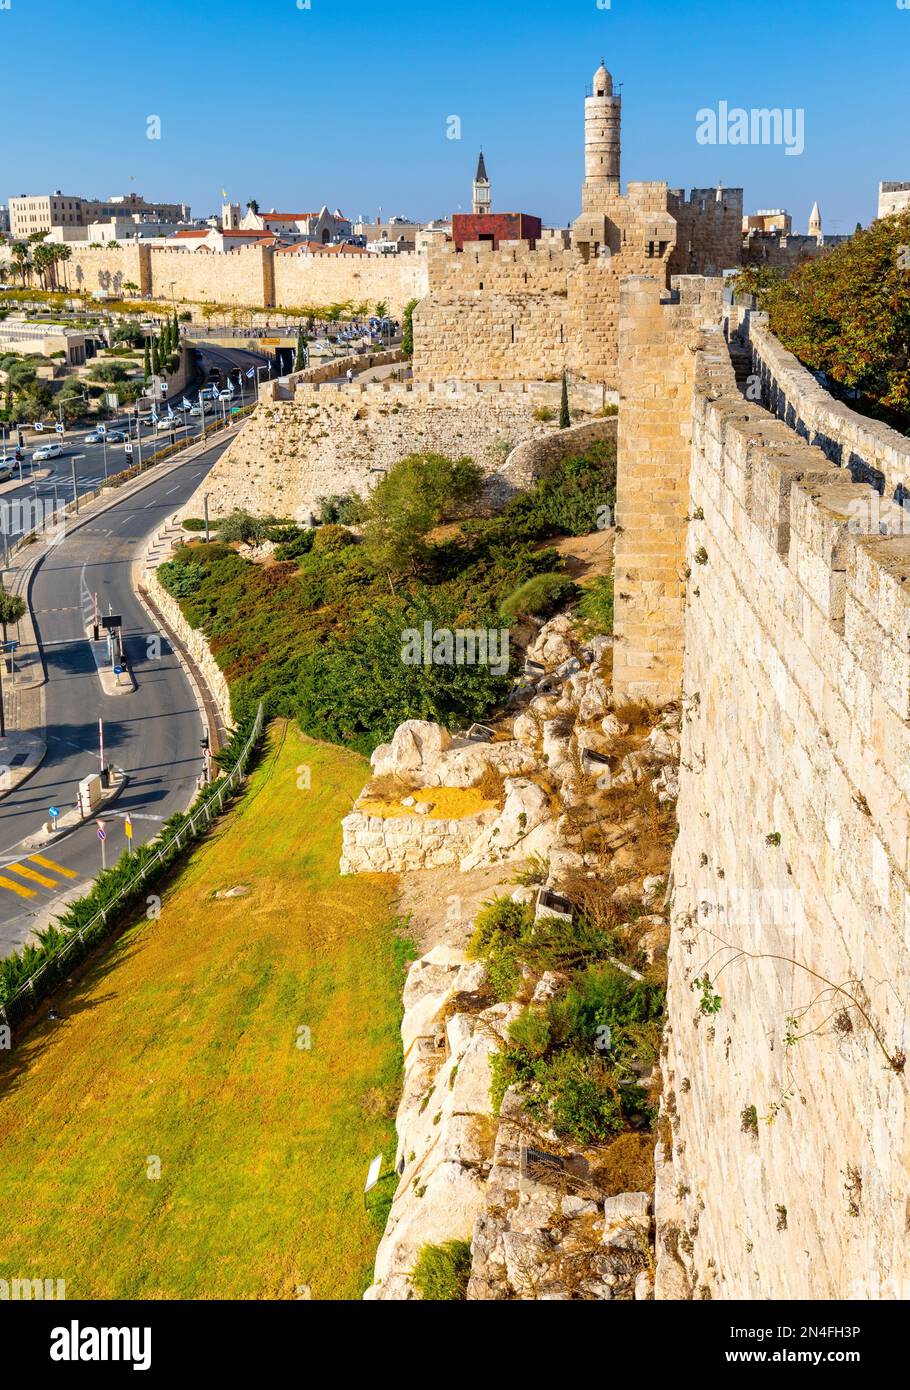 Jerusalem, Israel - 12. Oktober 2017: Mauern des Turms der Zitadelle von David und der Altstadt über dem Jaffa-Tor und der Hativat Yerushalayim-Straße mit Mamilla-Viertel Stockfoto